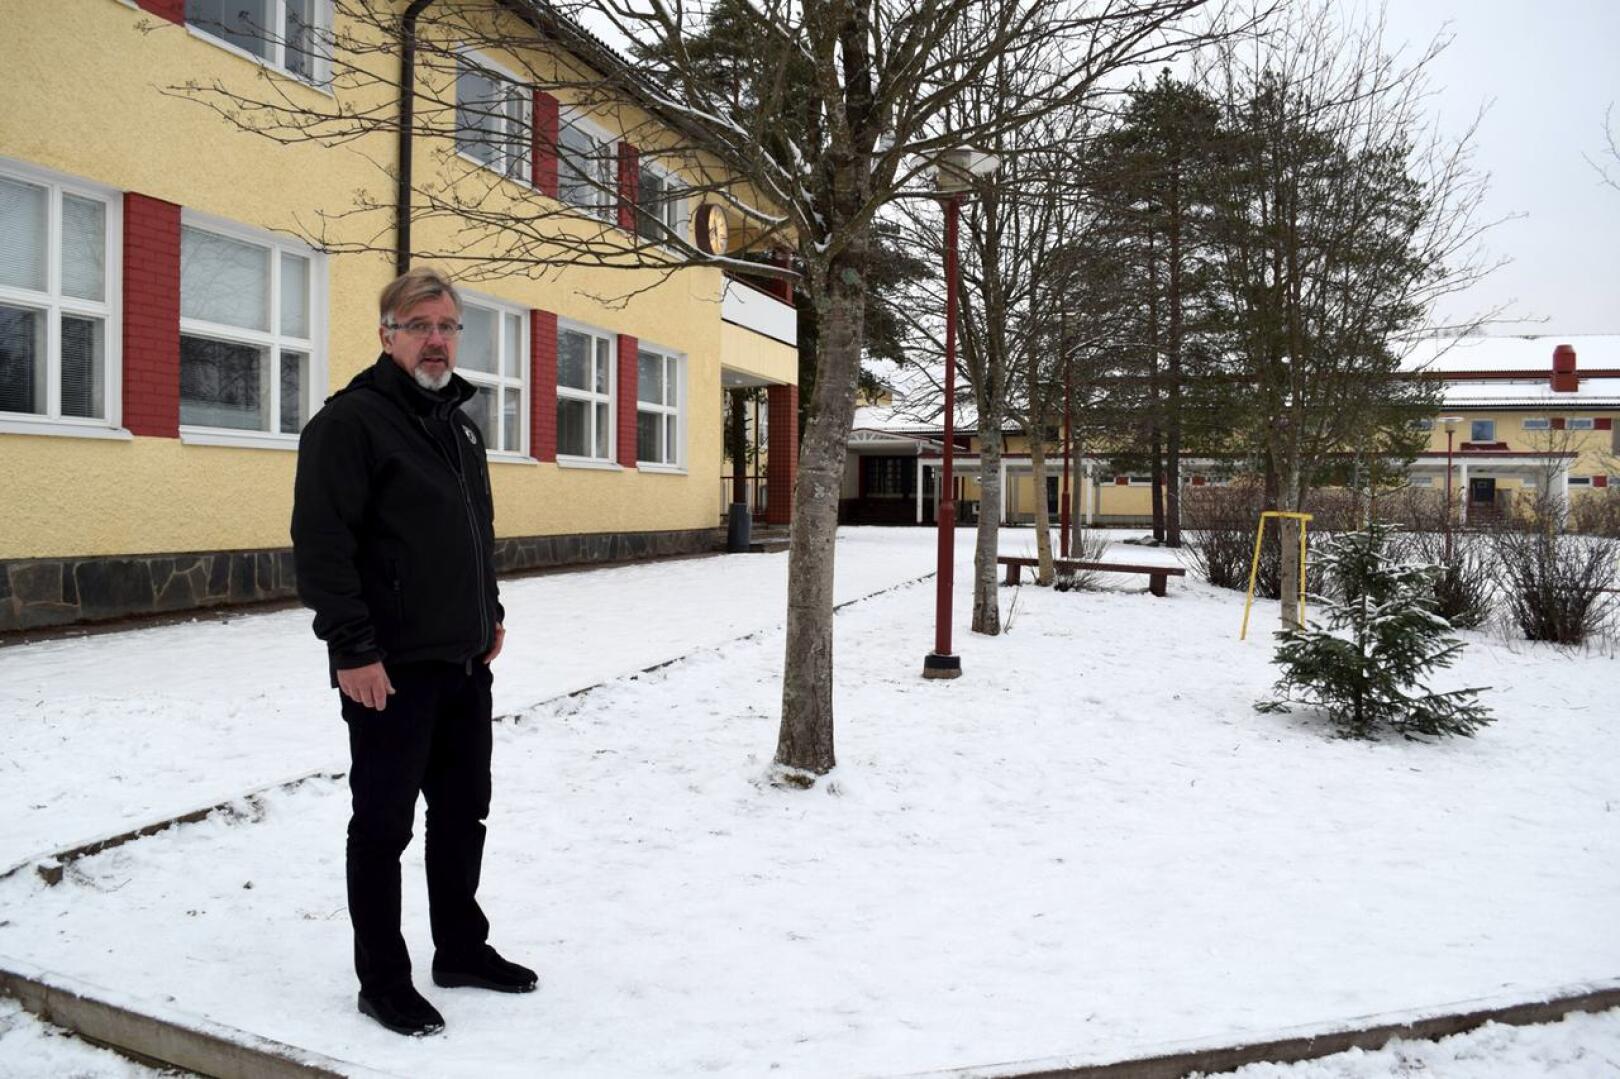 Ståhlbergin koulun rehtori Jari Saaranen kannattaa uuden ala-asteen rakentamista ja hänen takanaan olevan vanhan koulun purkamista..